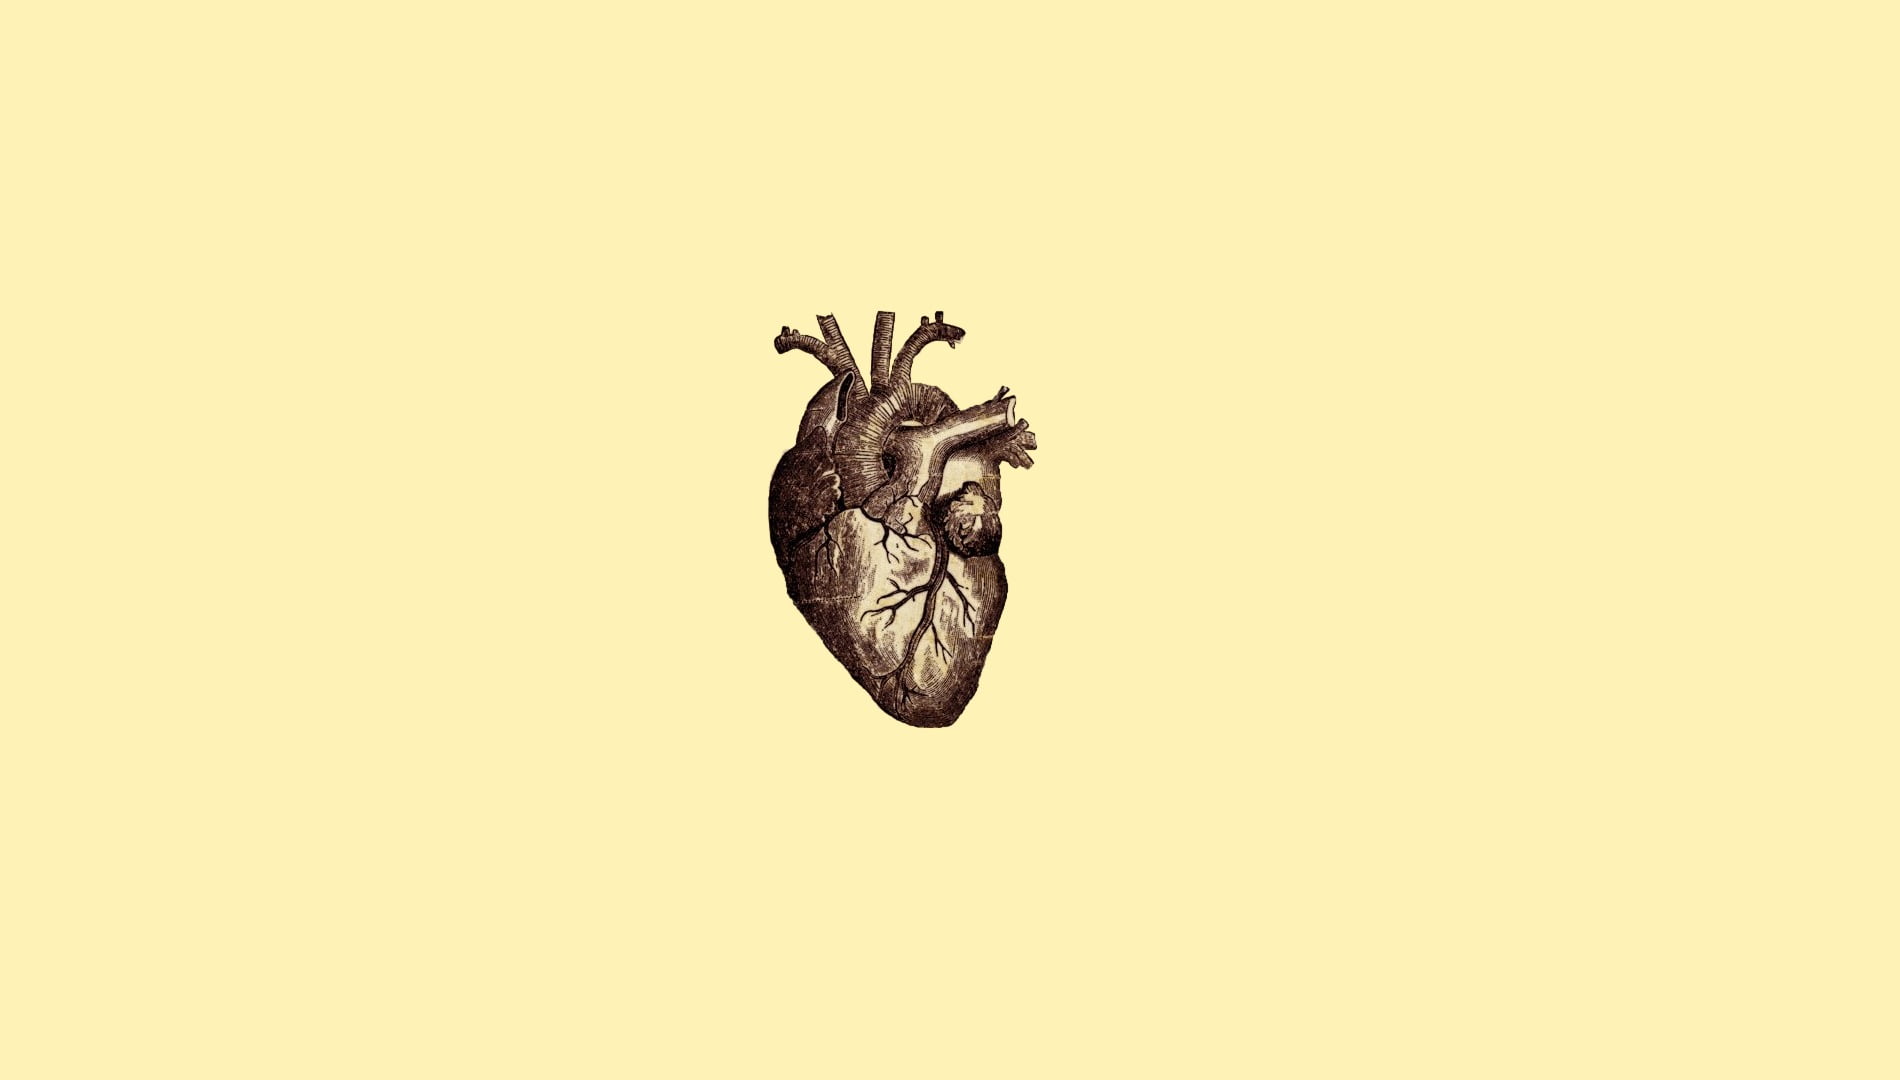 human heart illustration, digital art, minimalism, simple, simple background